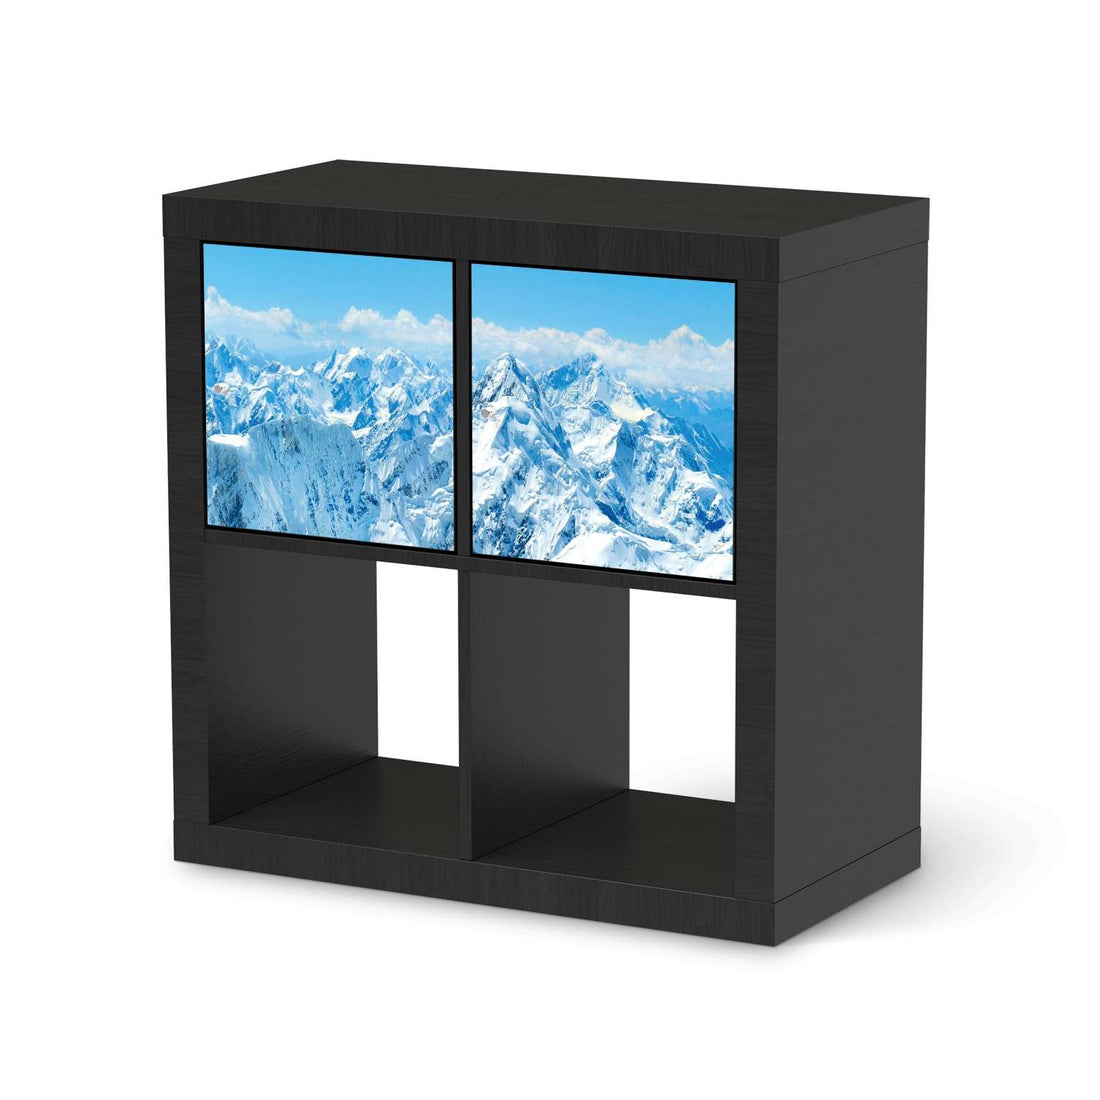 Möbel Klebefolie Himalaya - IKEA Expedit Regal 2 Türen Quer - schwarz